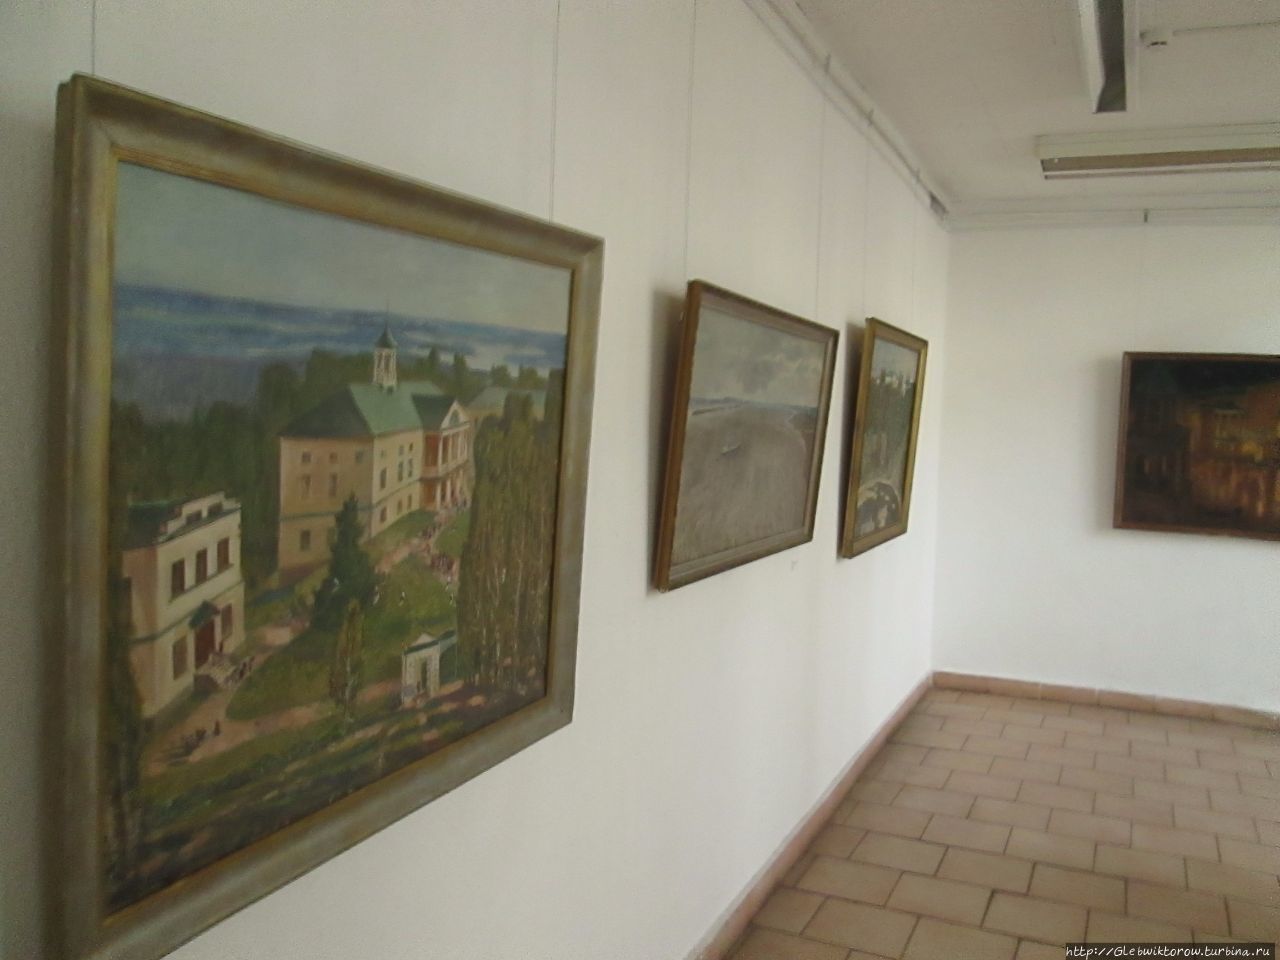 Музей современного изобразительного искусства Минск, Беларусь